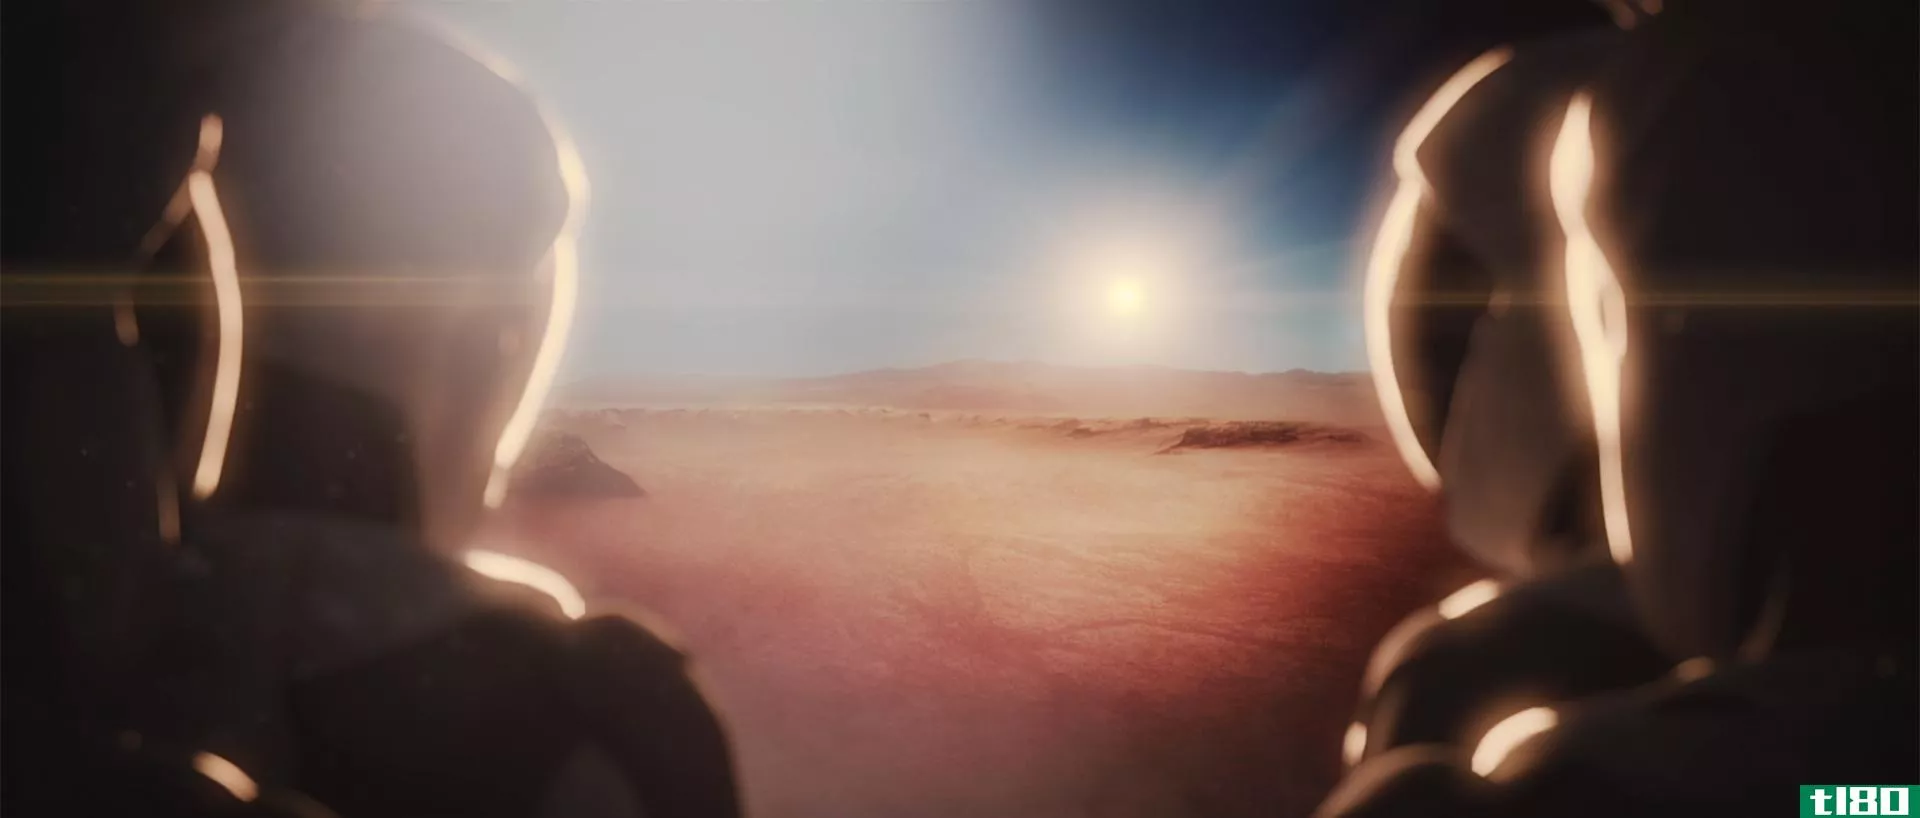 人类将用生命污染火星——问题是如何做对